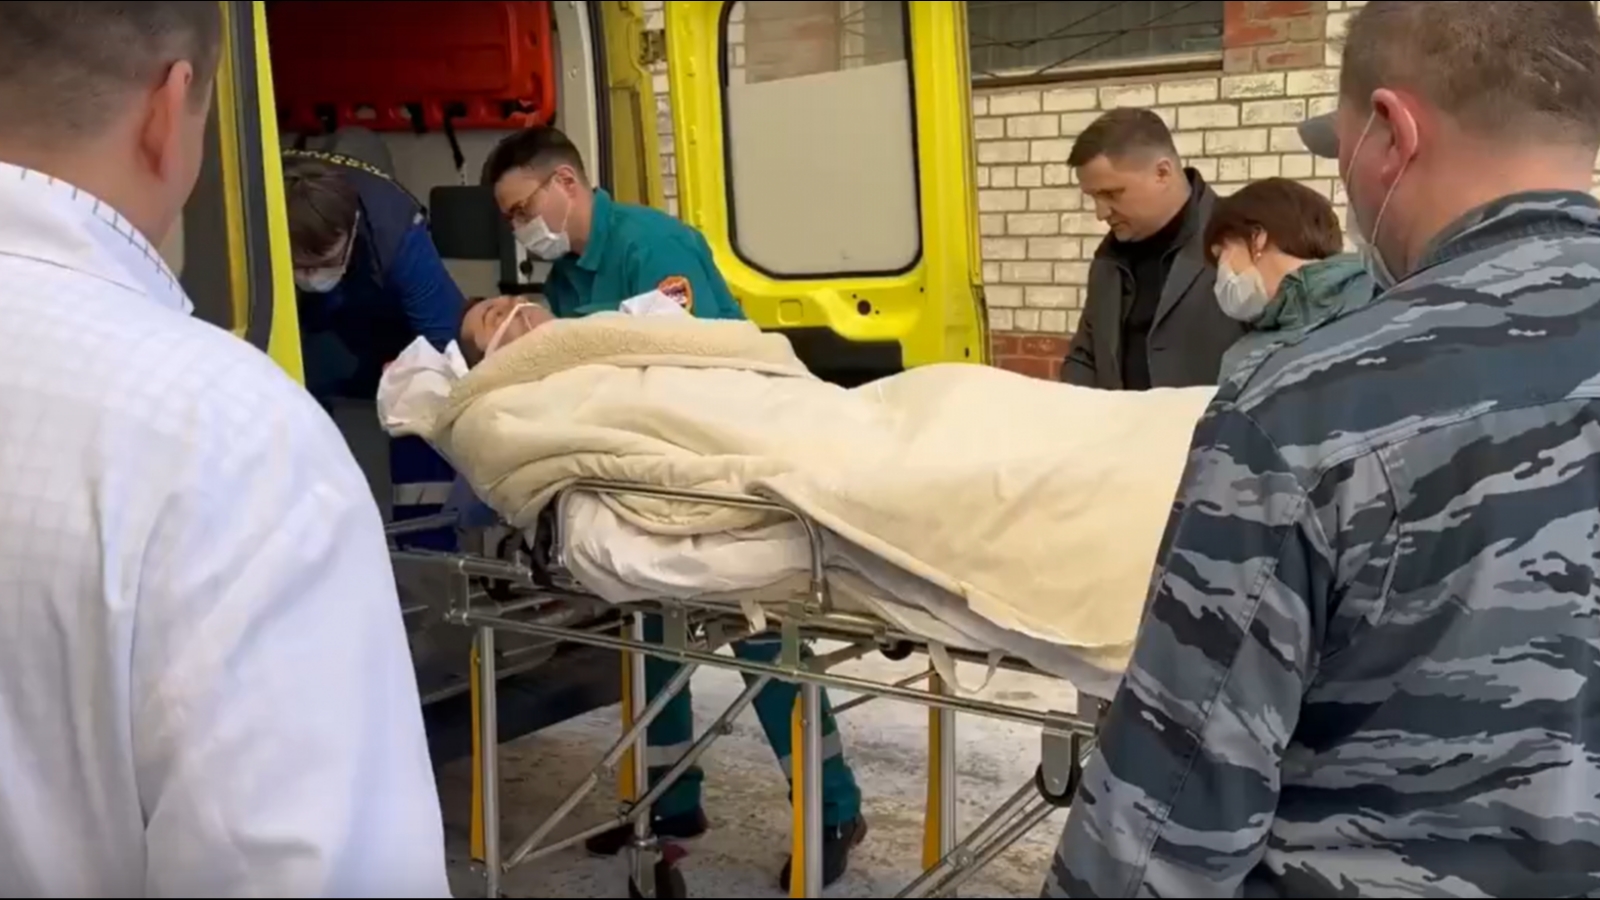 Панычев: Медицинскую эвакуацию губернатор перенес хорошо [видео]